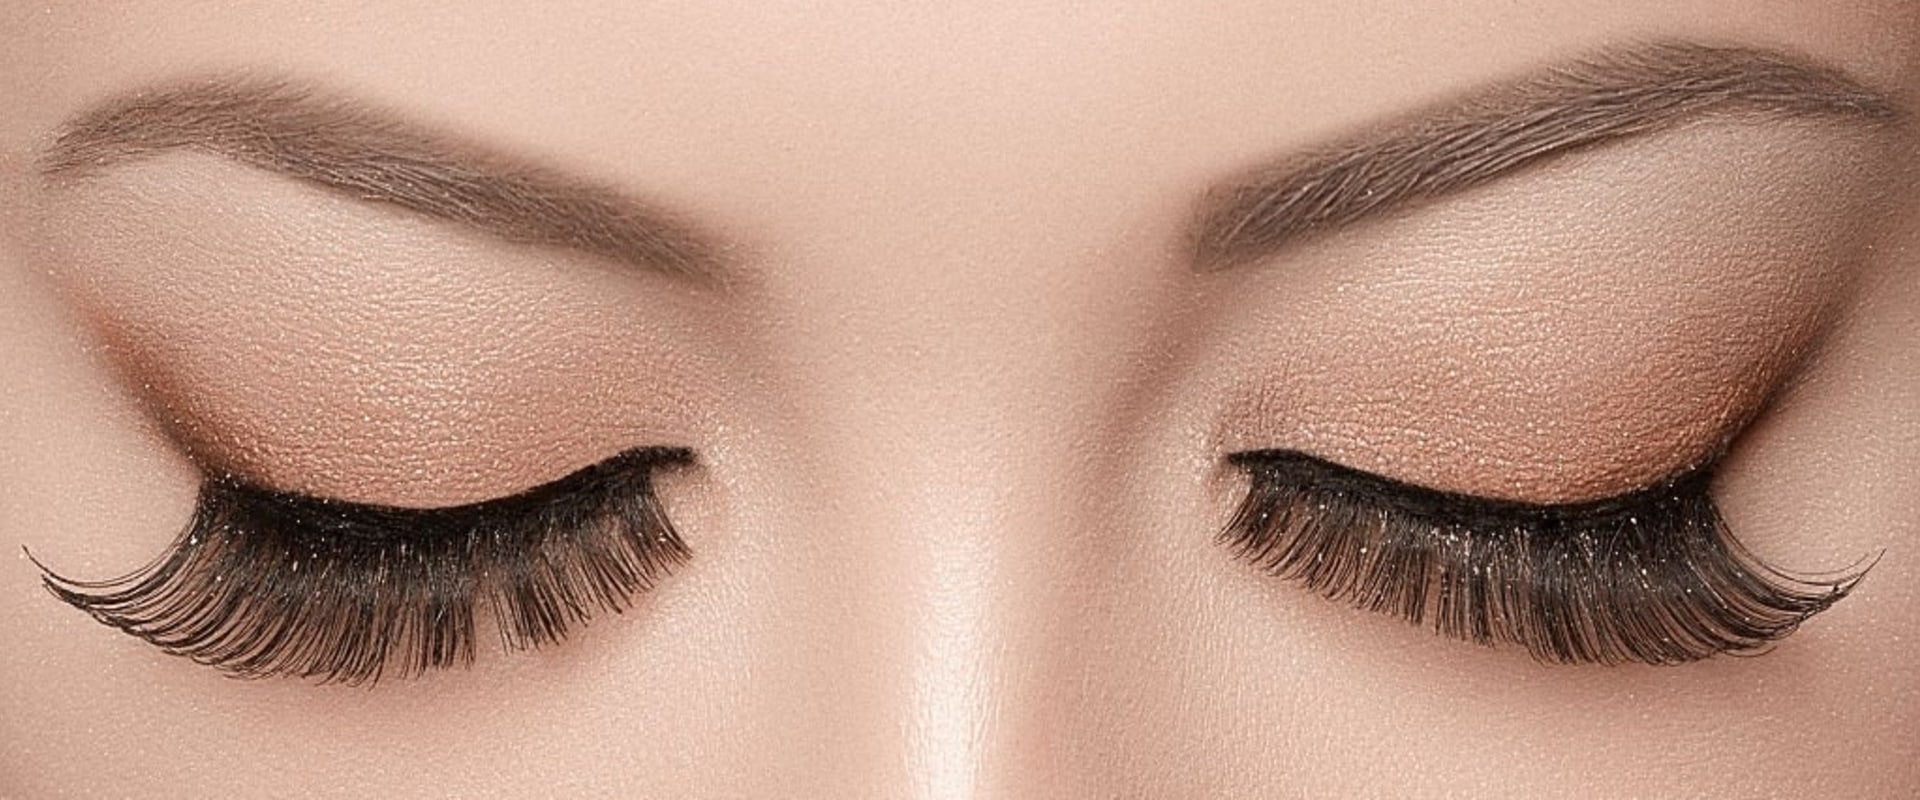 Do magnetic lashes ruin your eyelashes?